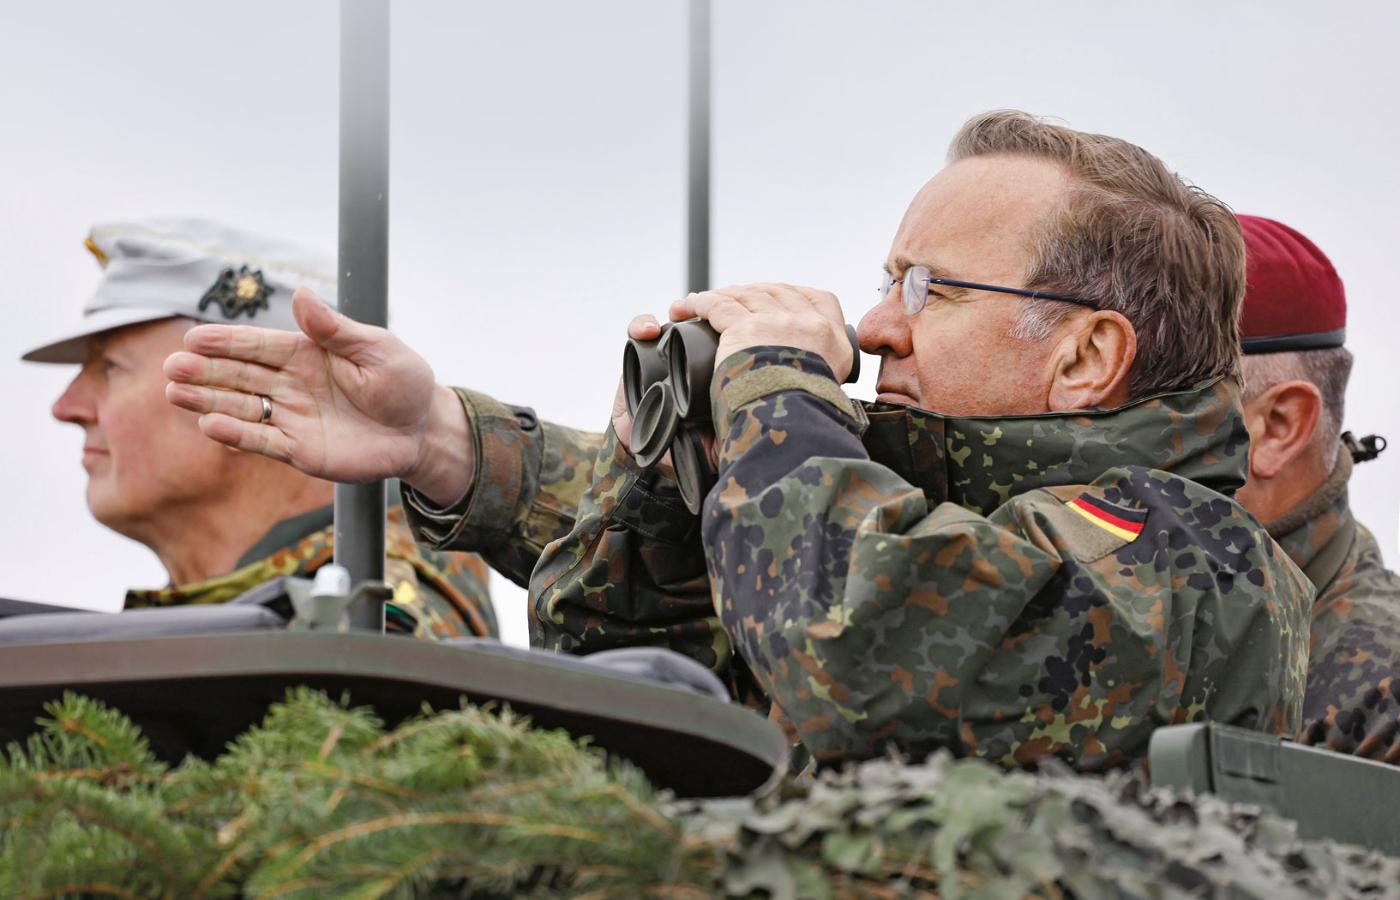 Pistoriusowi nie można odmówić serca do armii. „Potrzebujemy silnej Bundeswehry” – oznajmił tuż po objęciu urzędu. Do tego jednak daleka droga.